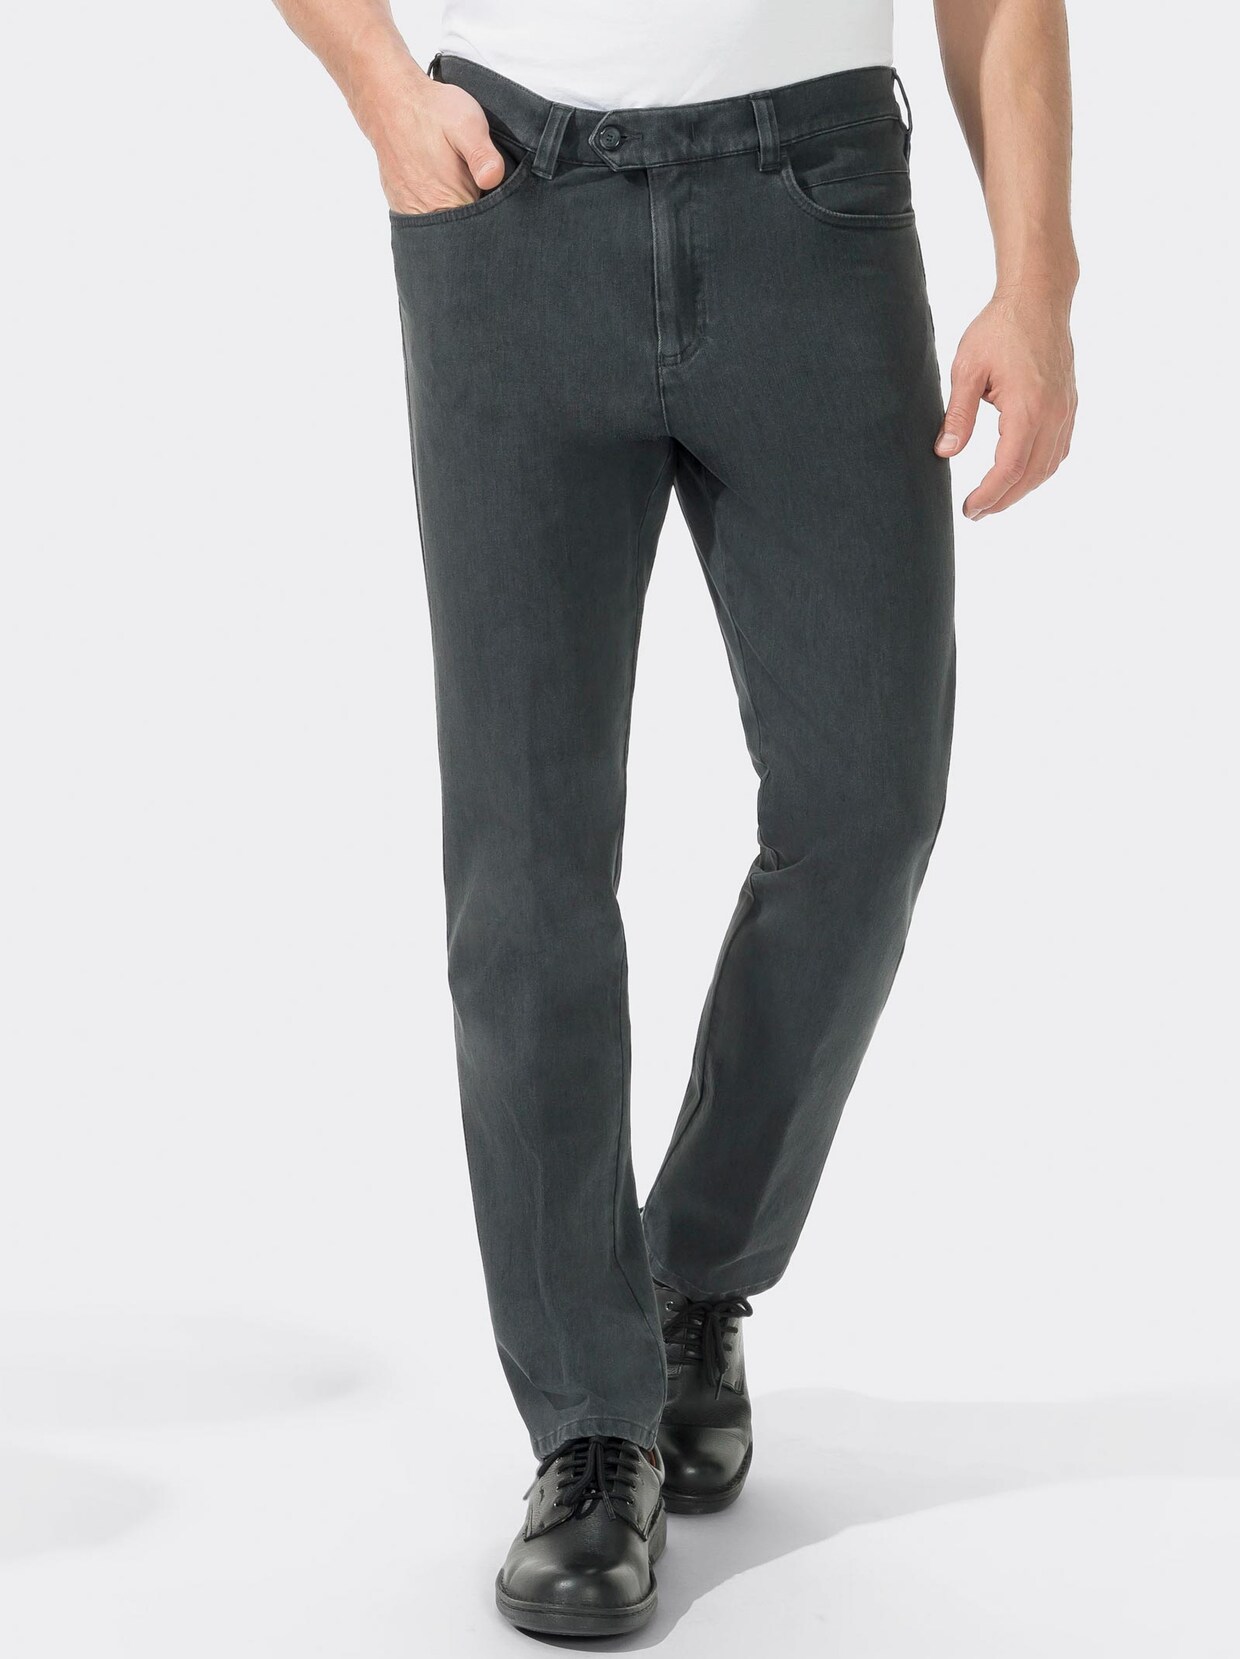 Brühl Jeans - grey-denim